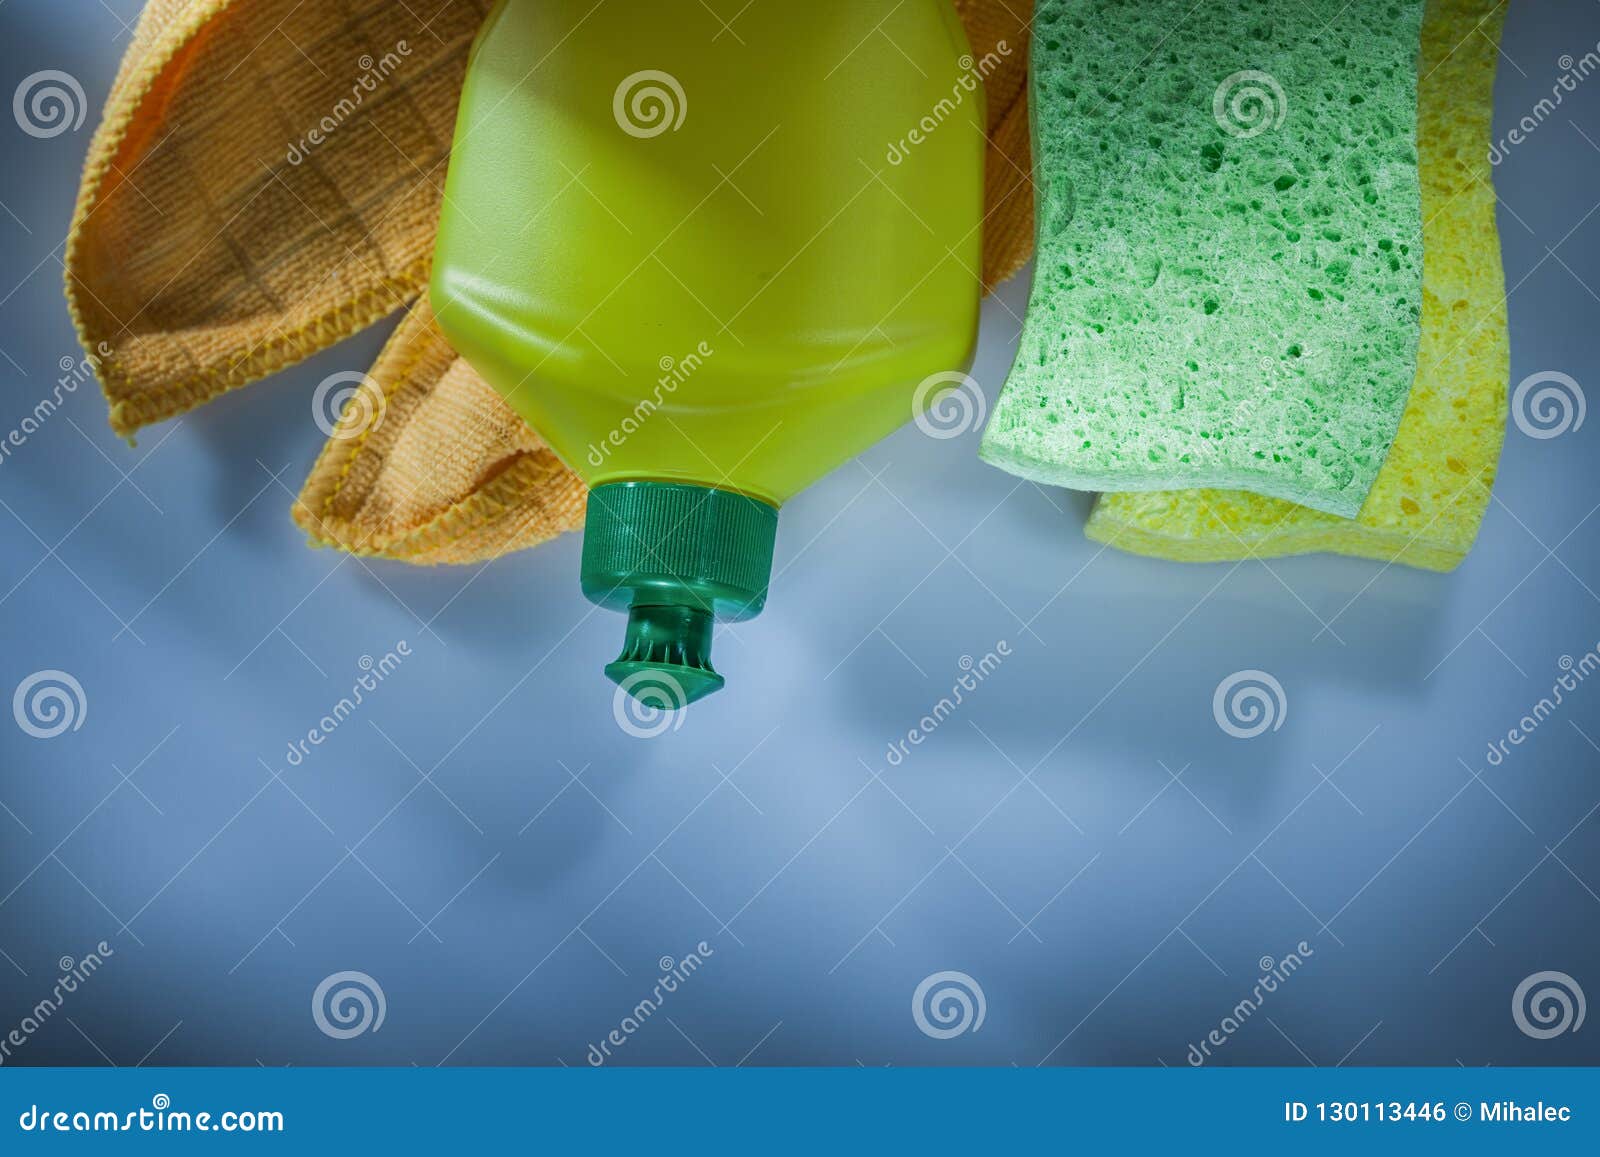 Plastic Bottle Washing Sponge Cloth on White Surface Stock Photo ...